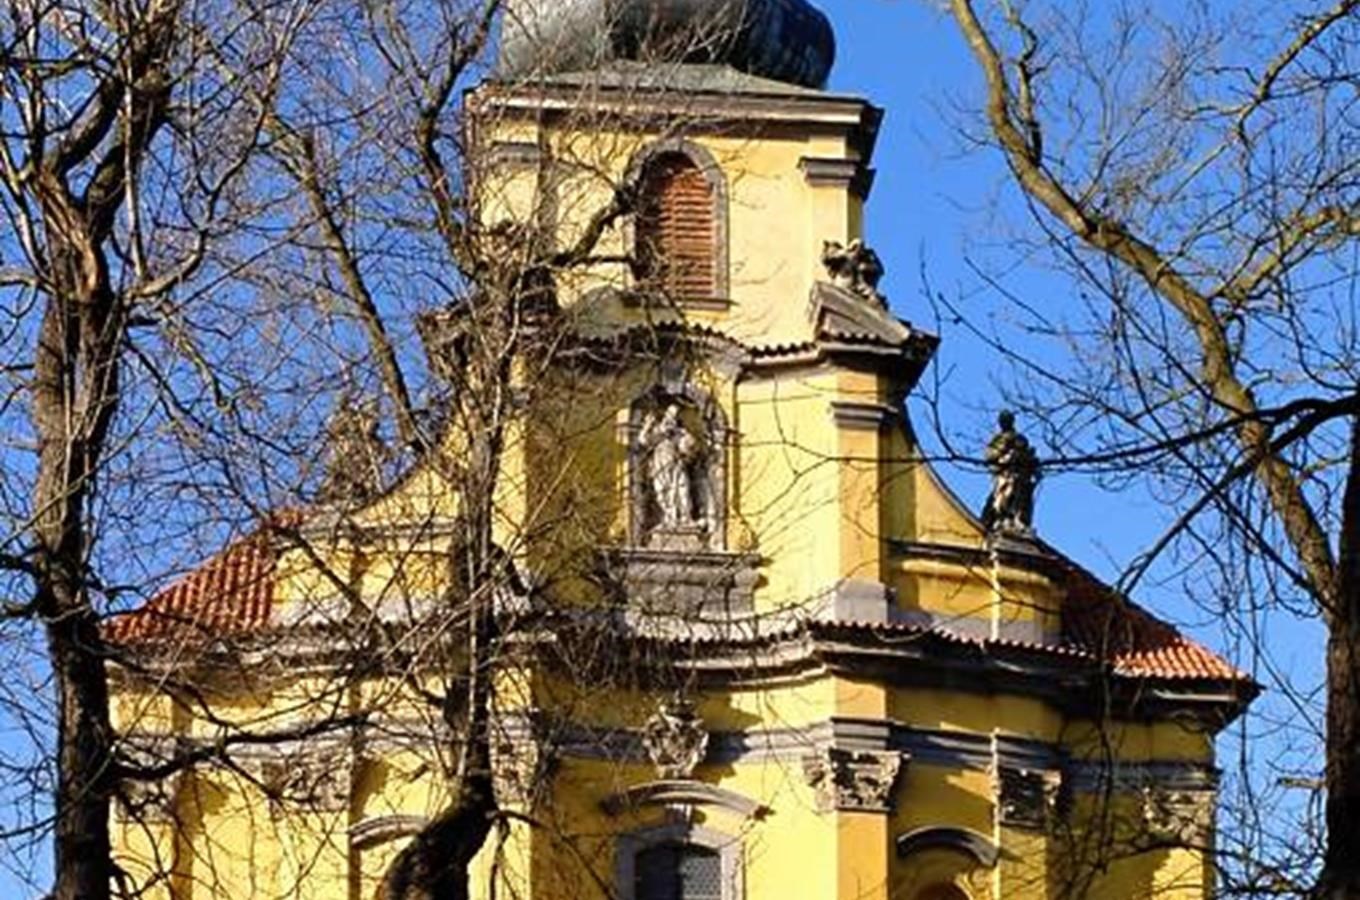 Peruc - barokní kostel sv. Petra a Pavla